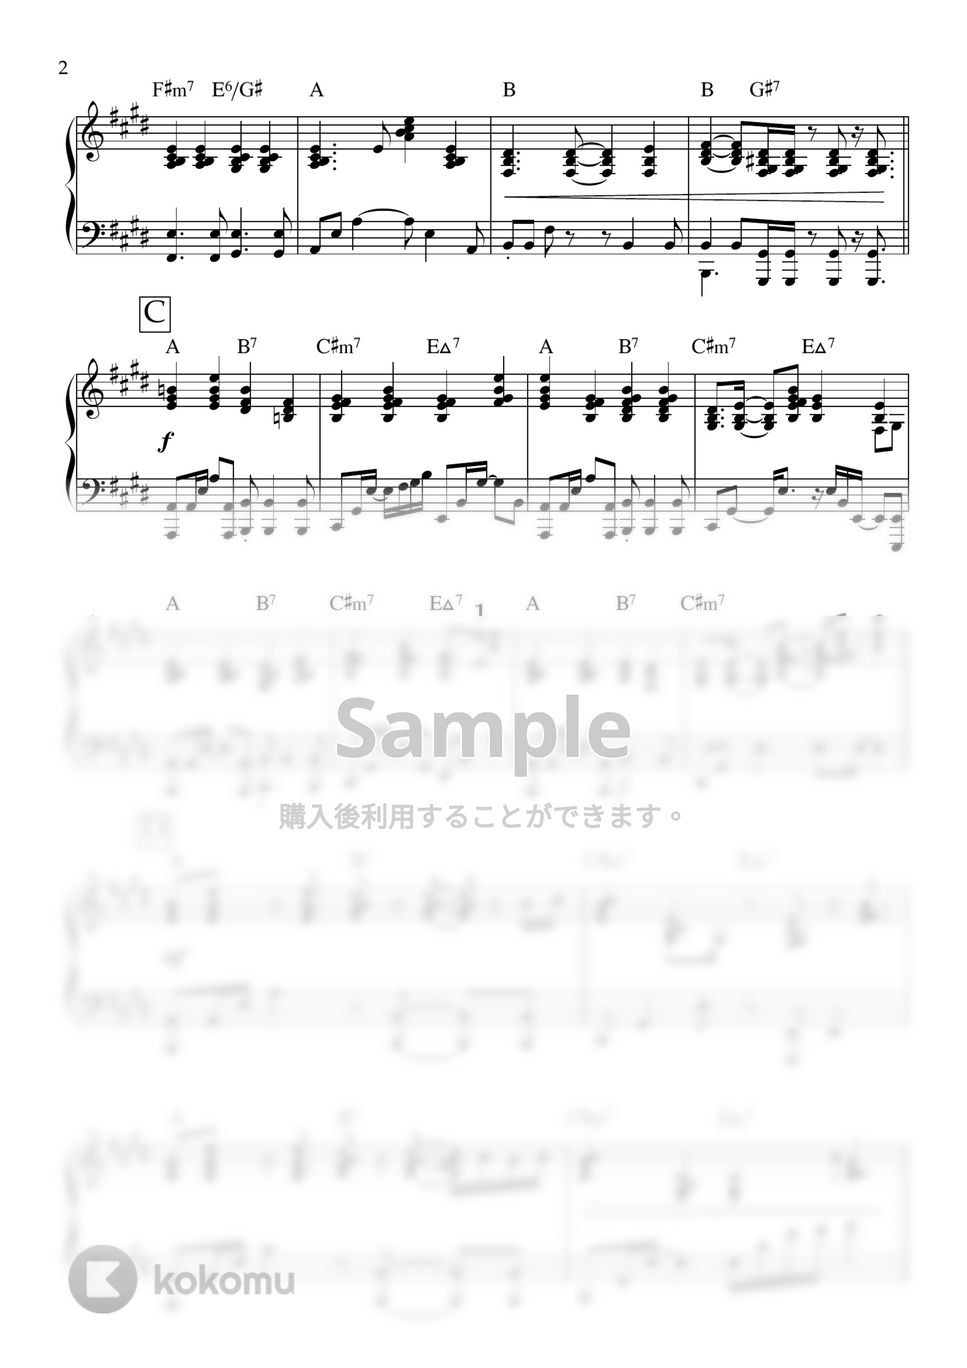 yama - Lost (ピアノ,伴奏,yama,Lost) by ヒット